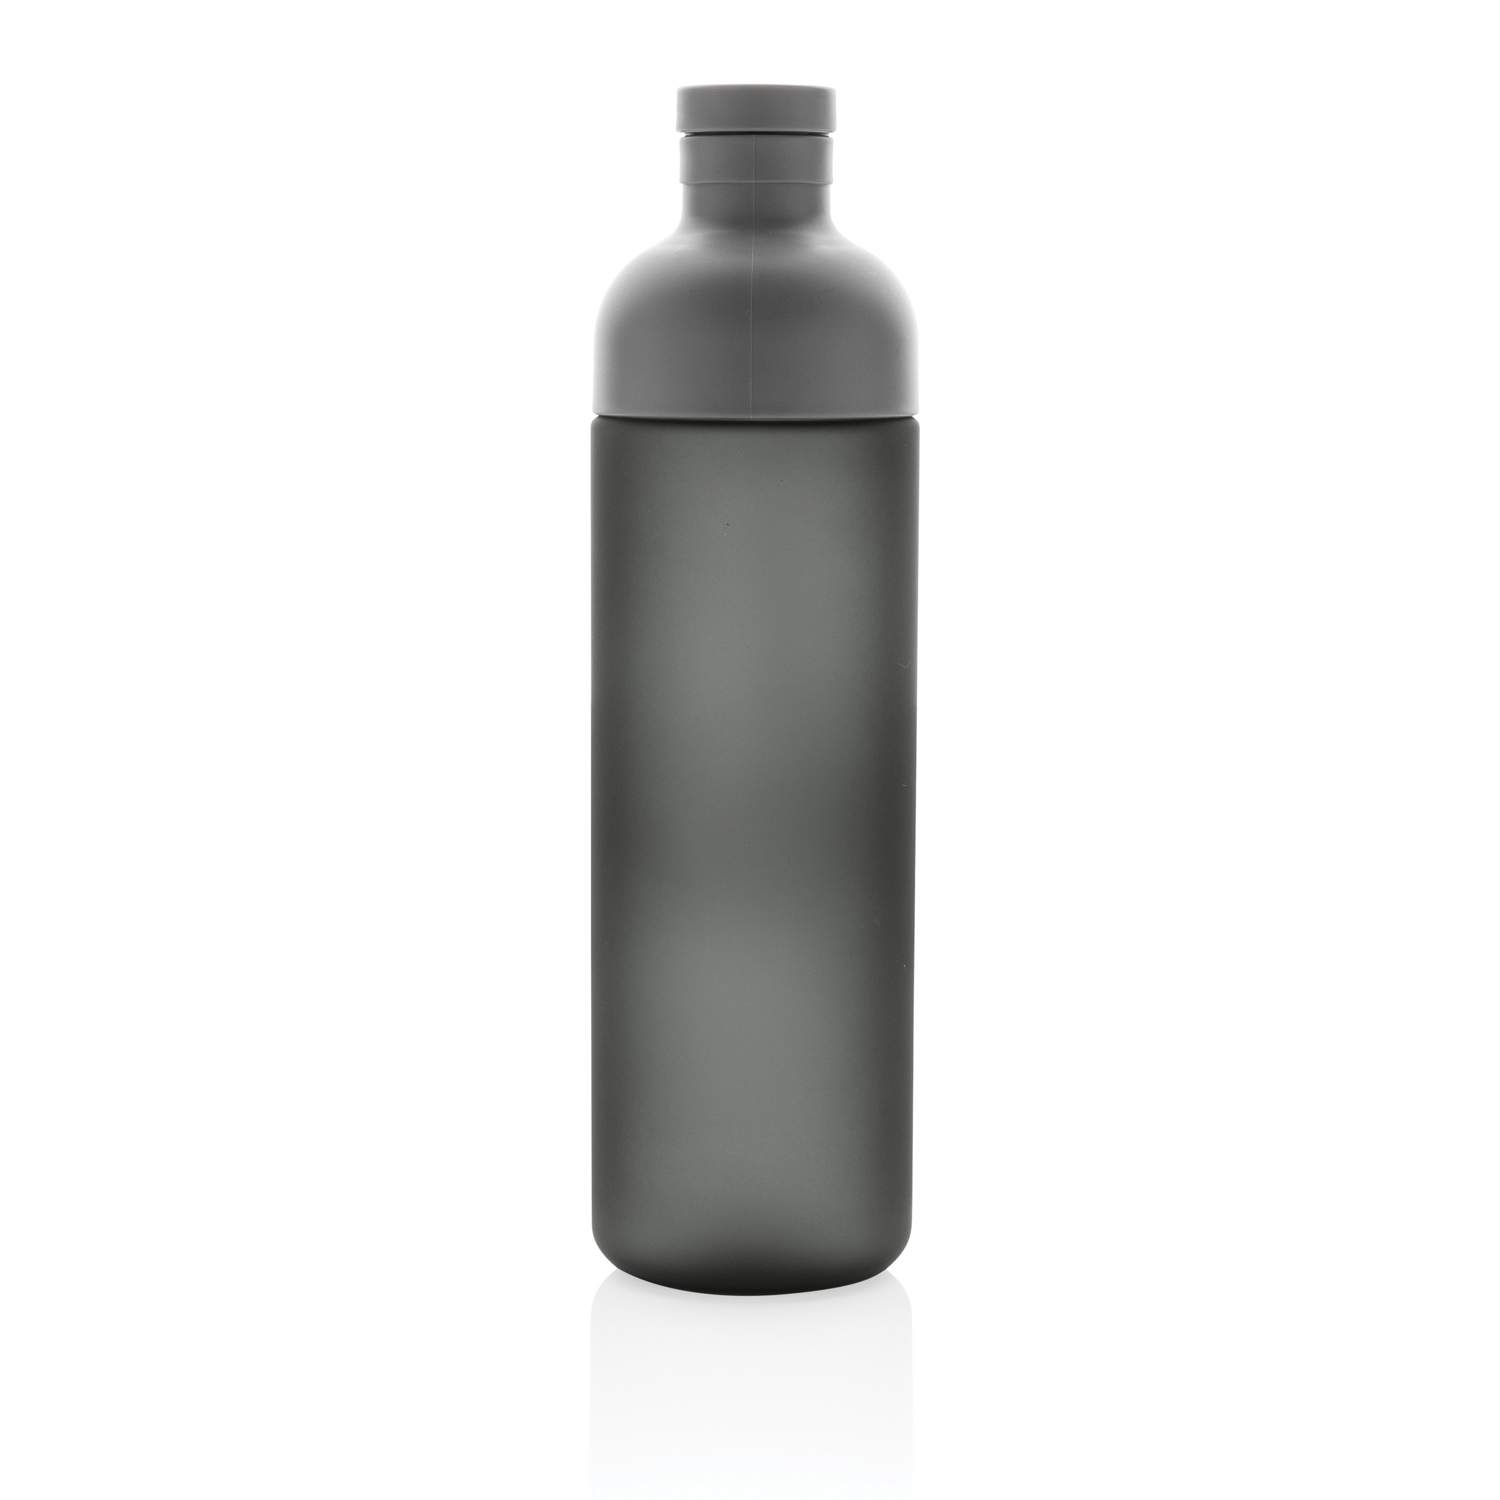 Герметичная бутылка из тритана Impact, 600 мл, пластик